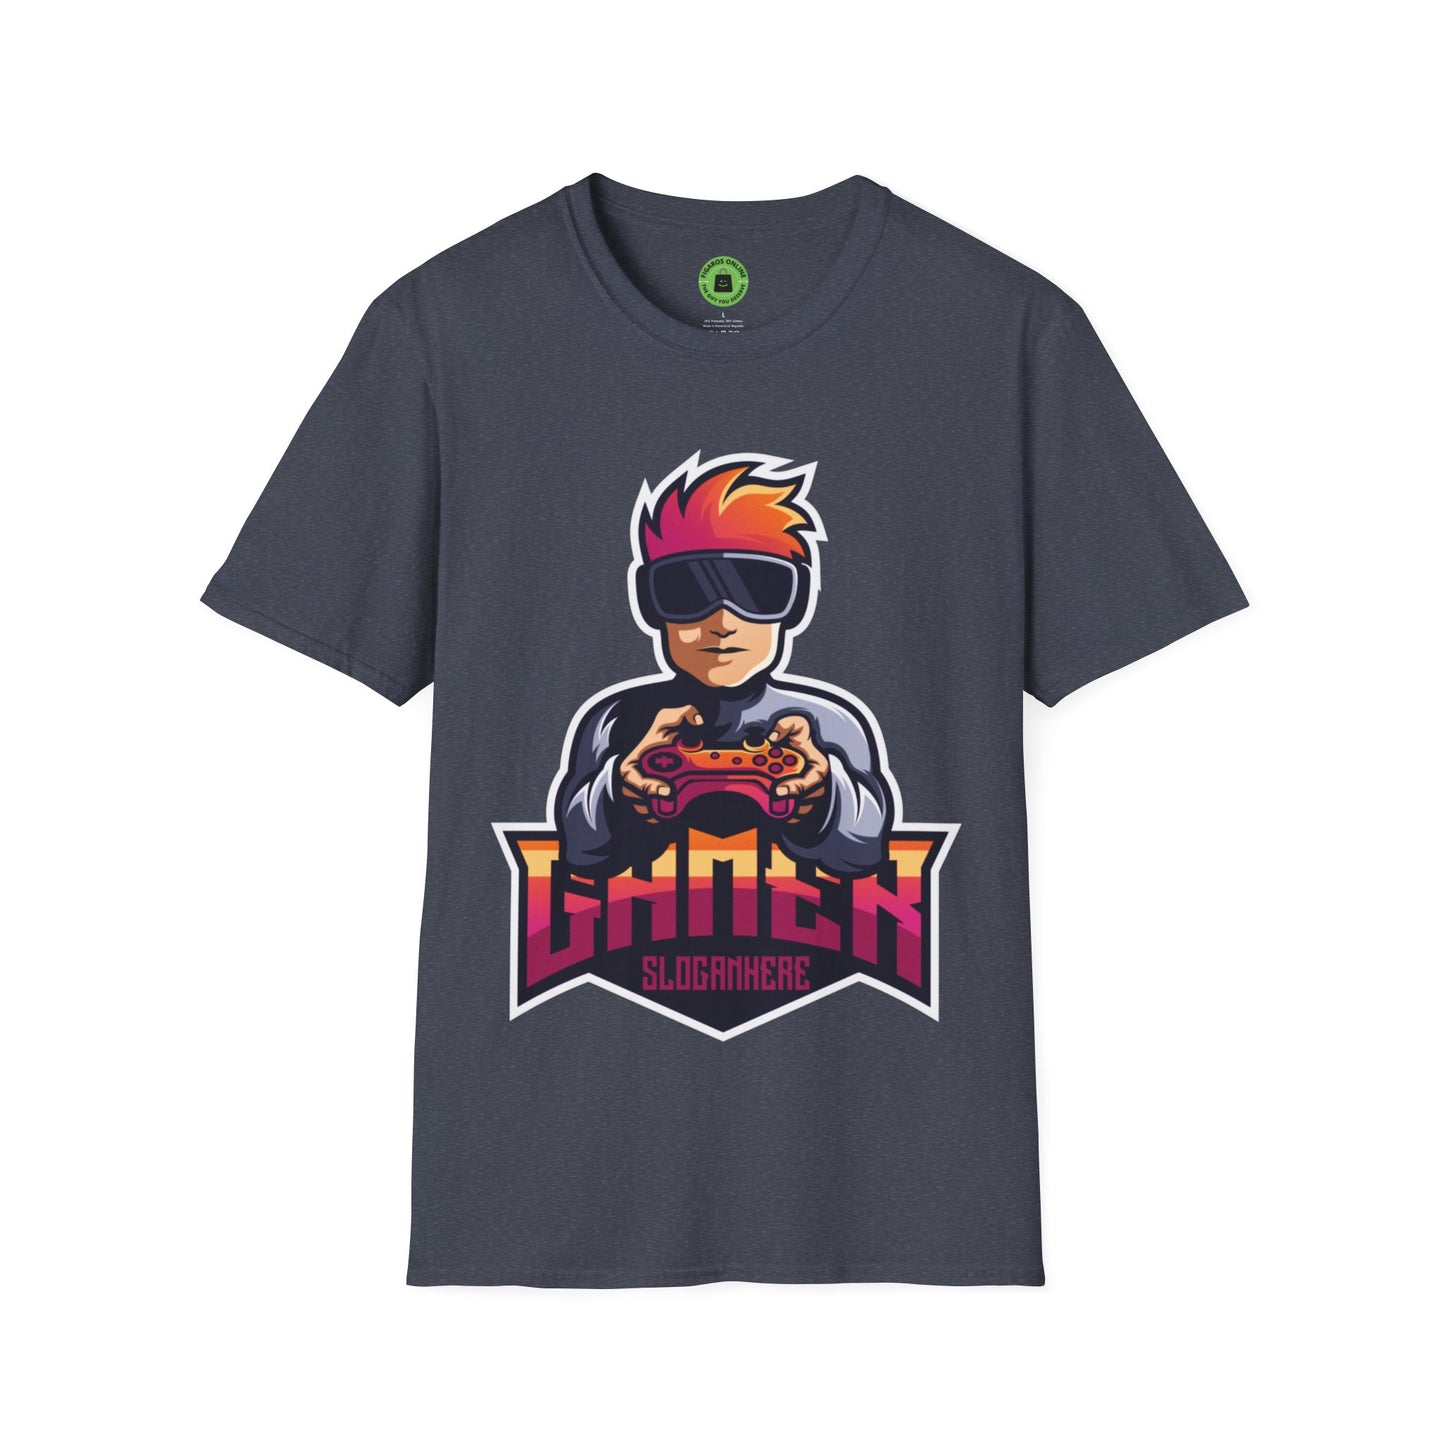 Camiseta Softstyle unisex - Gamer